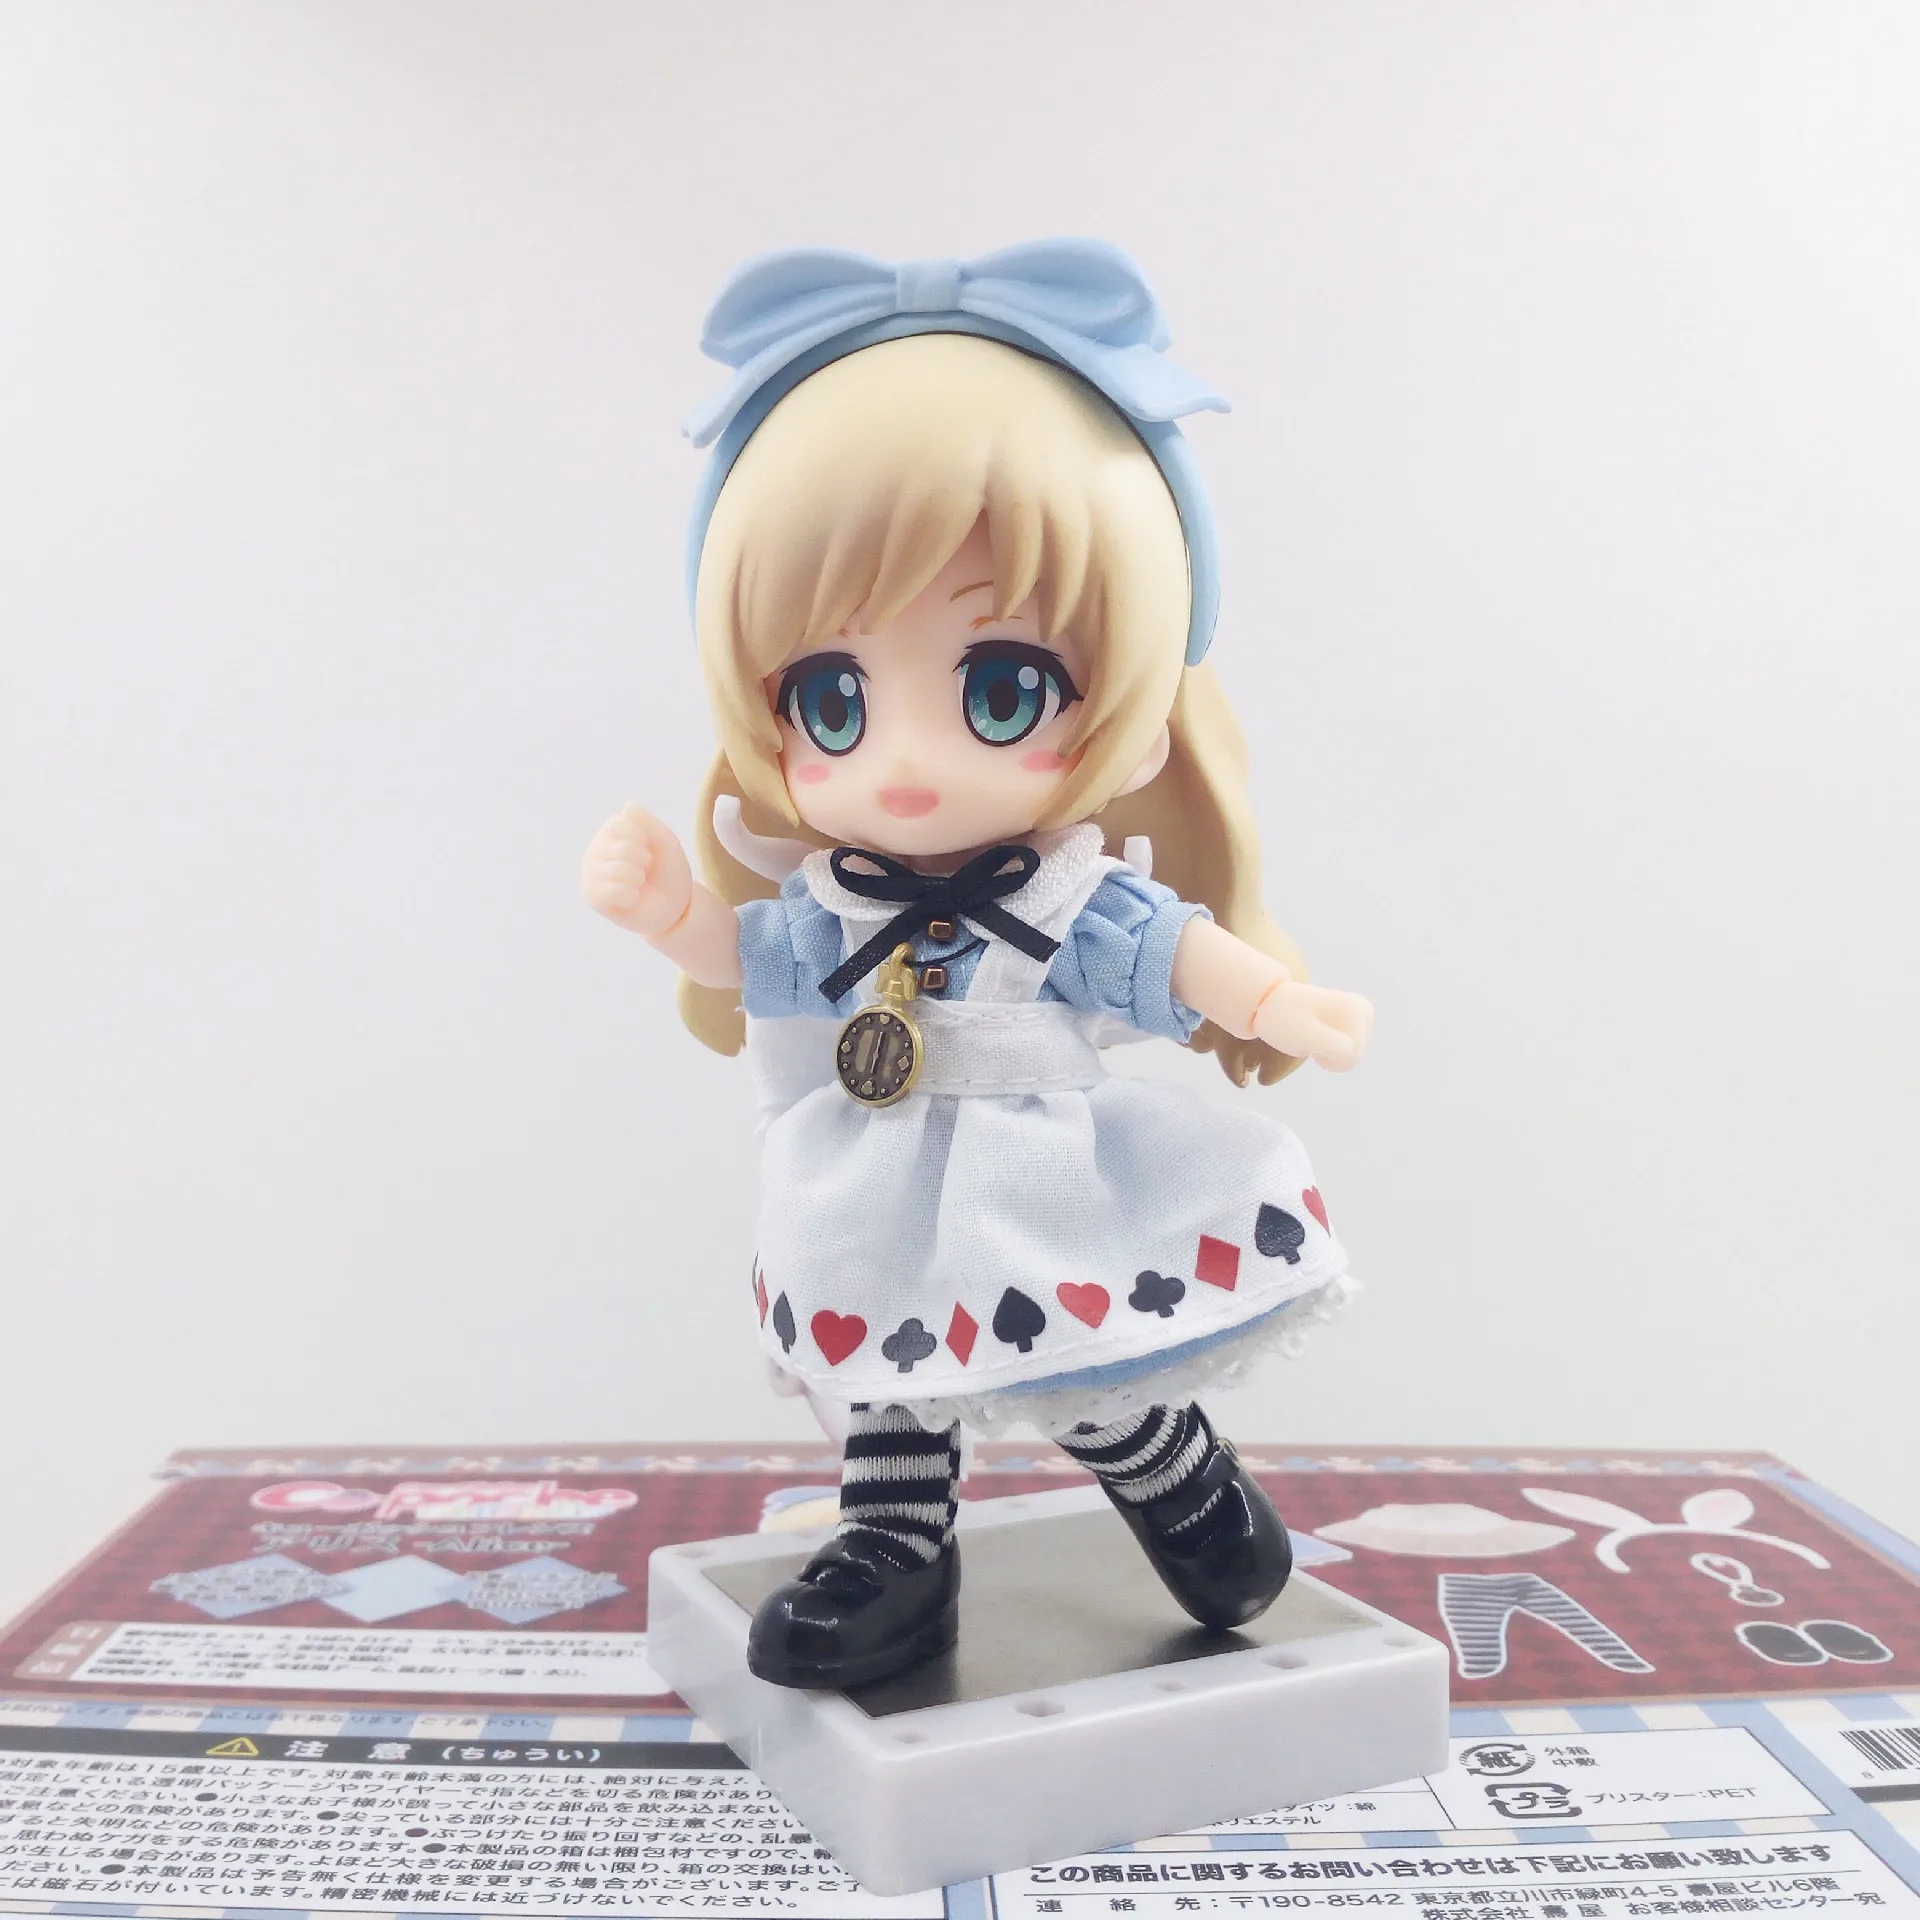 Cu-poche друзья Алиса из Nendoroid кукла ПВХ фигурка Коллекционная модель игрушки 13 см